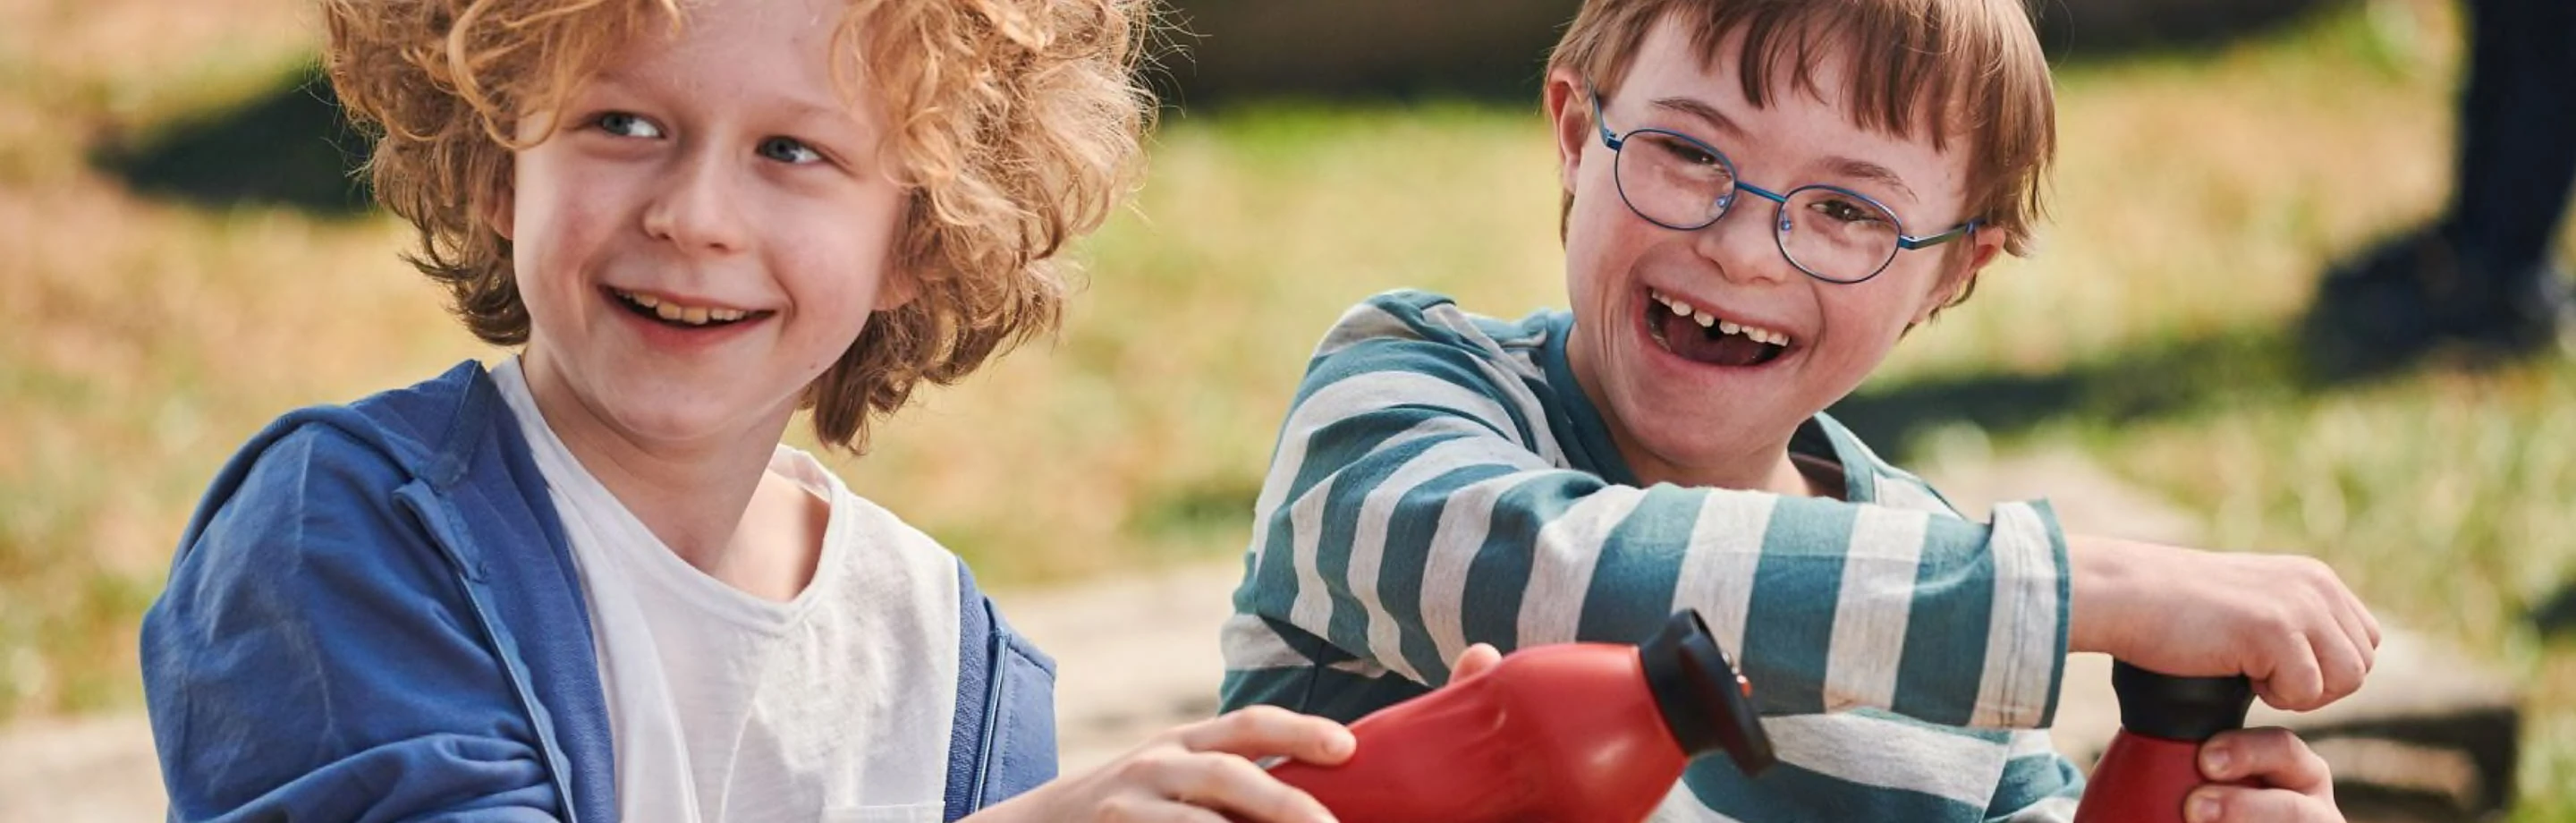 Zwei lachende Jungen im Grundschulalter mit Trinkflaschen auf einem Spielplatz